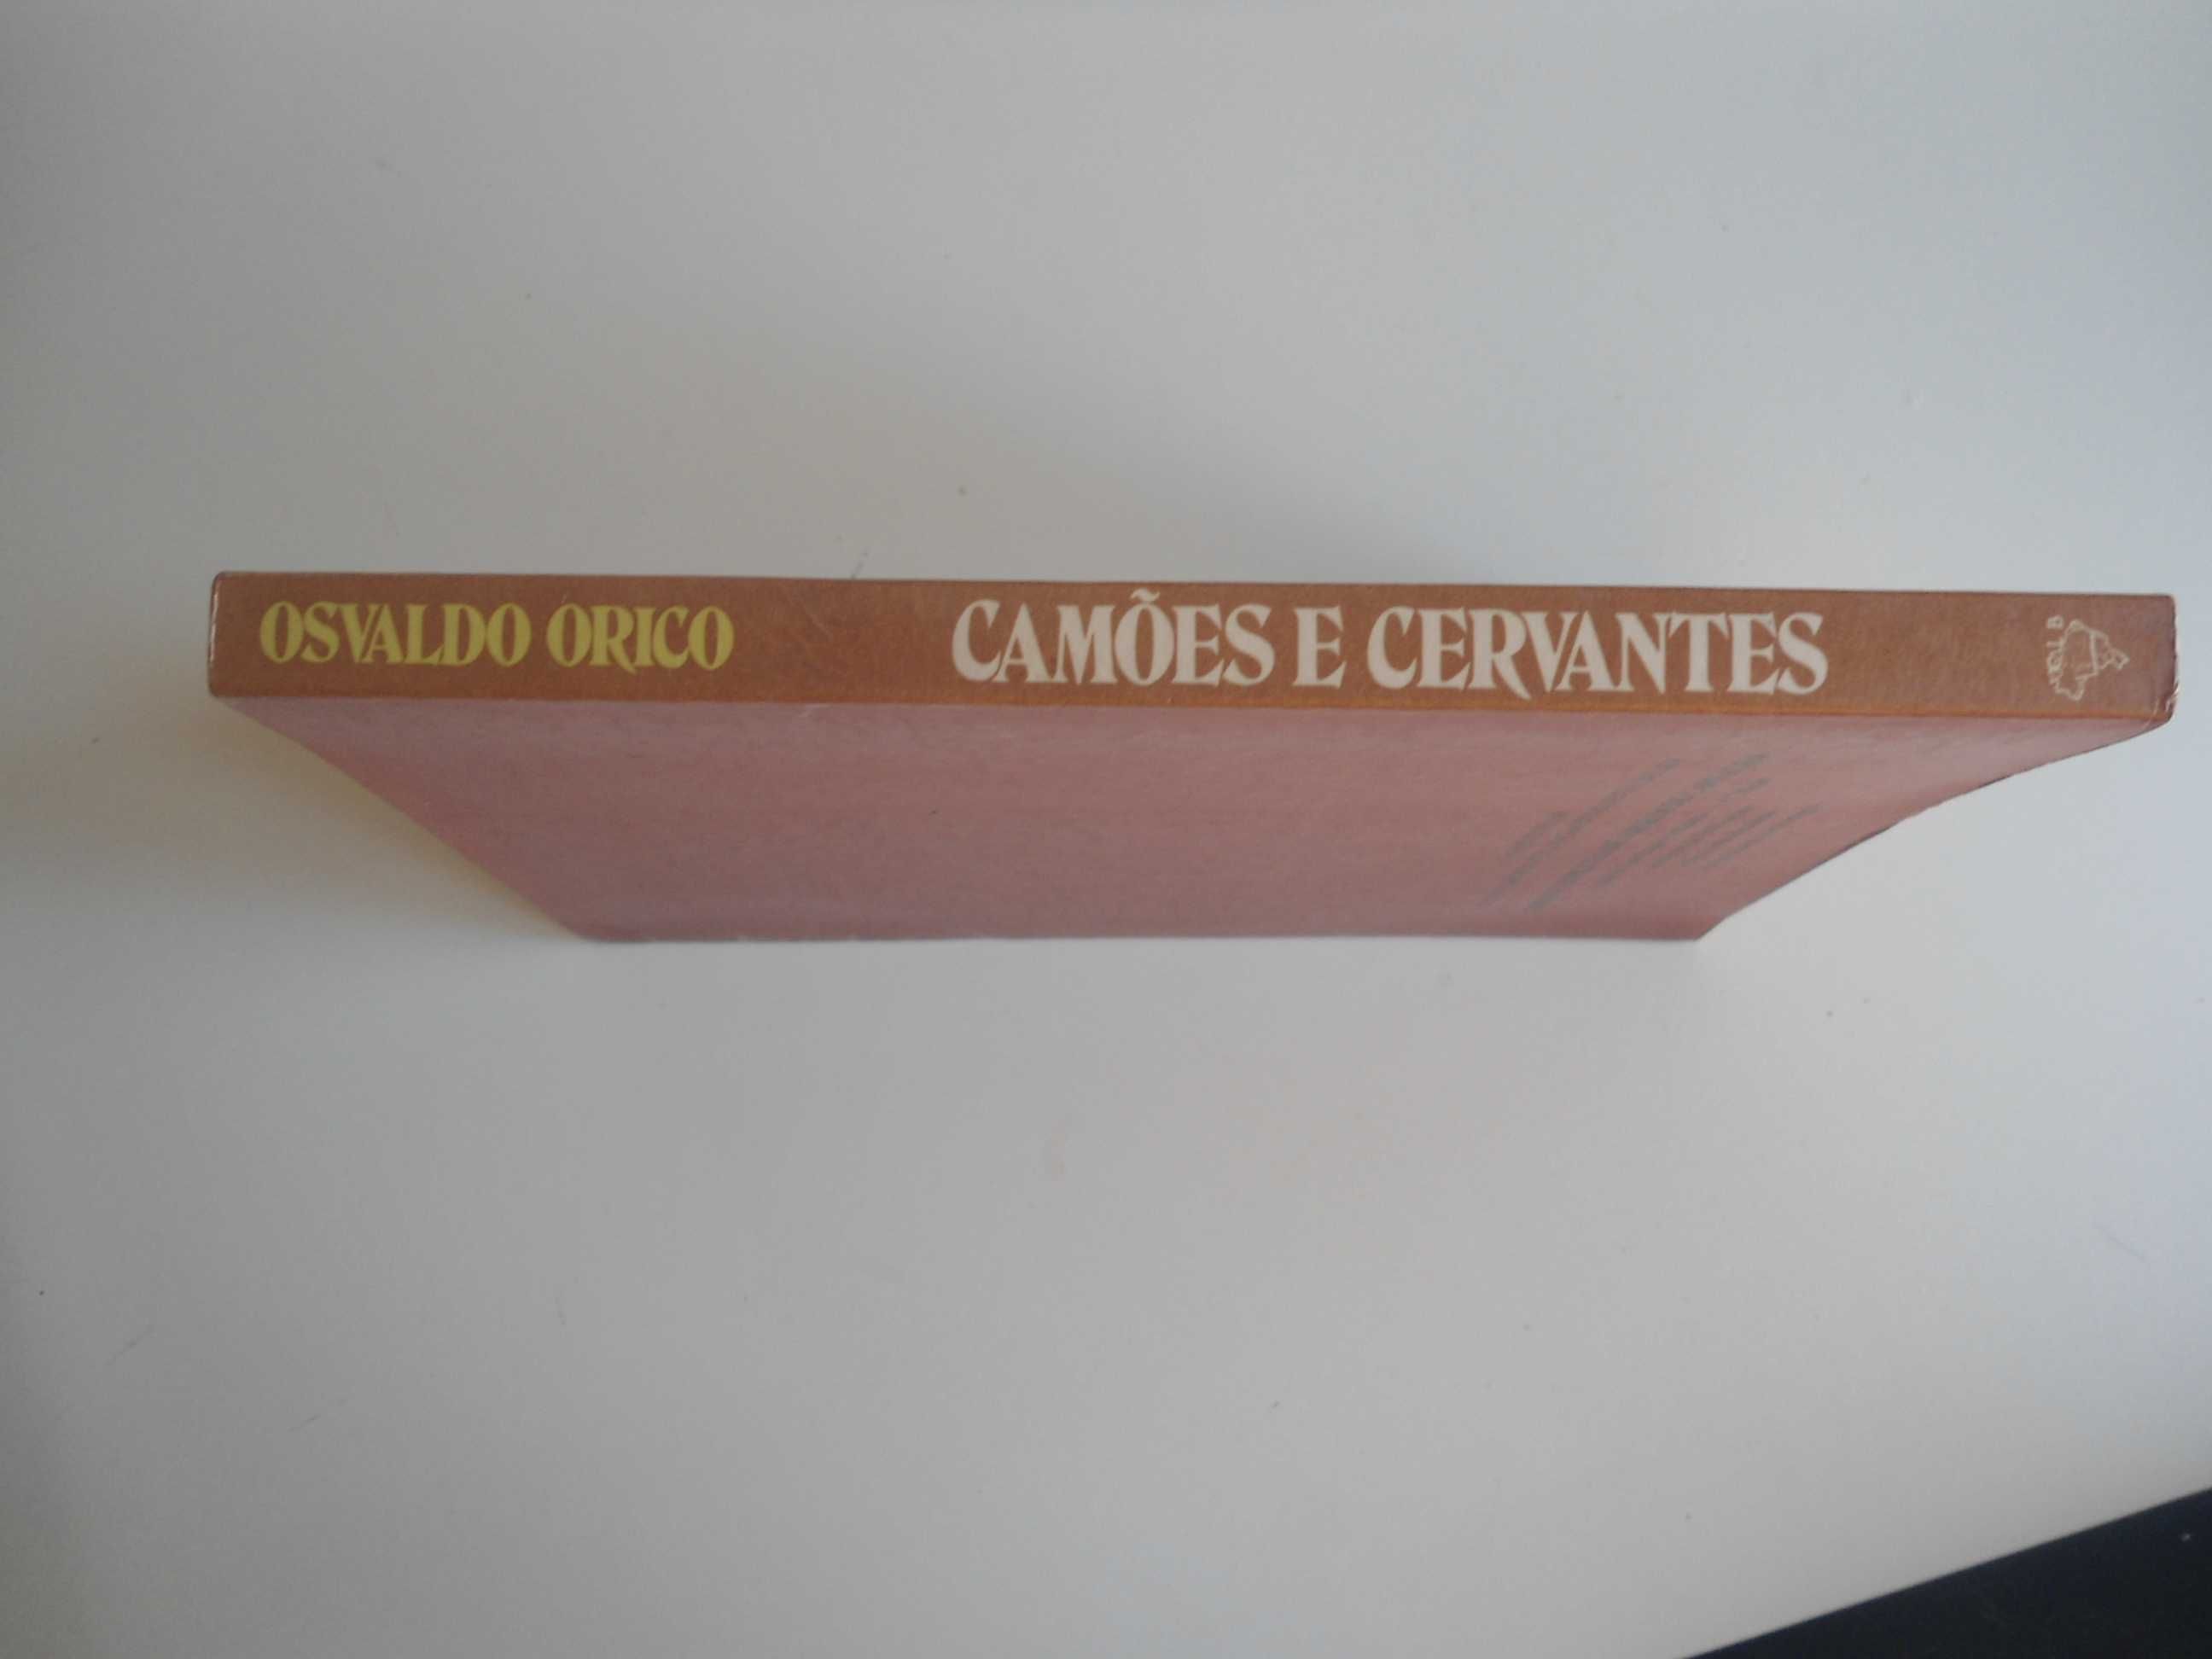 Camões e Cervantes por Osvaldo Orico